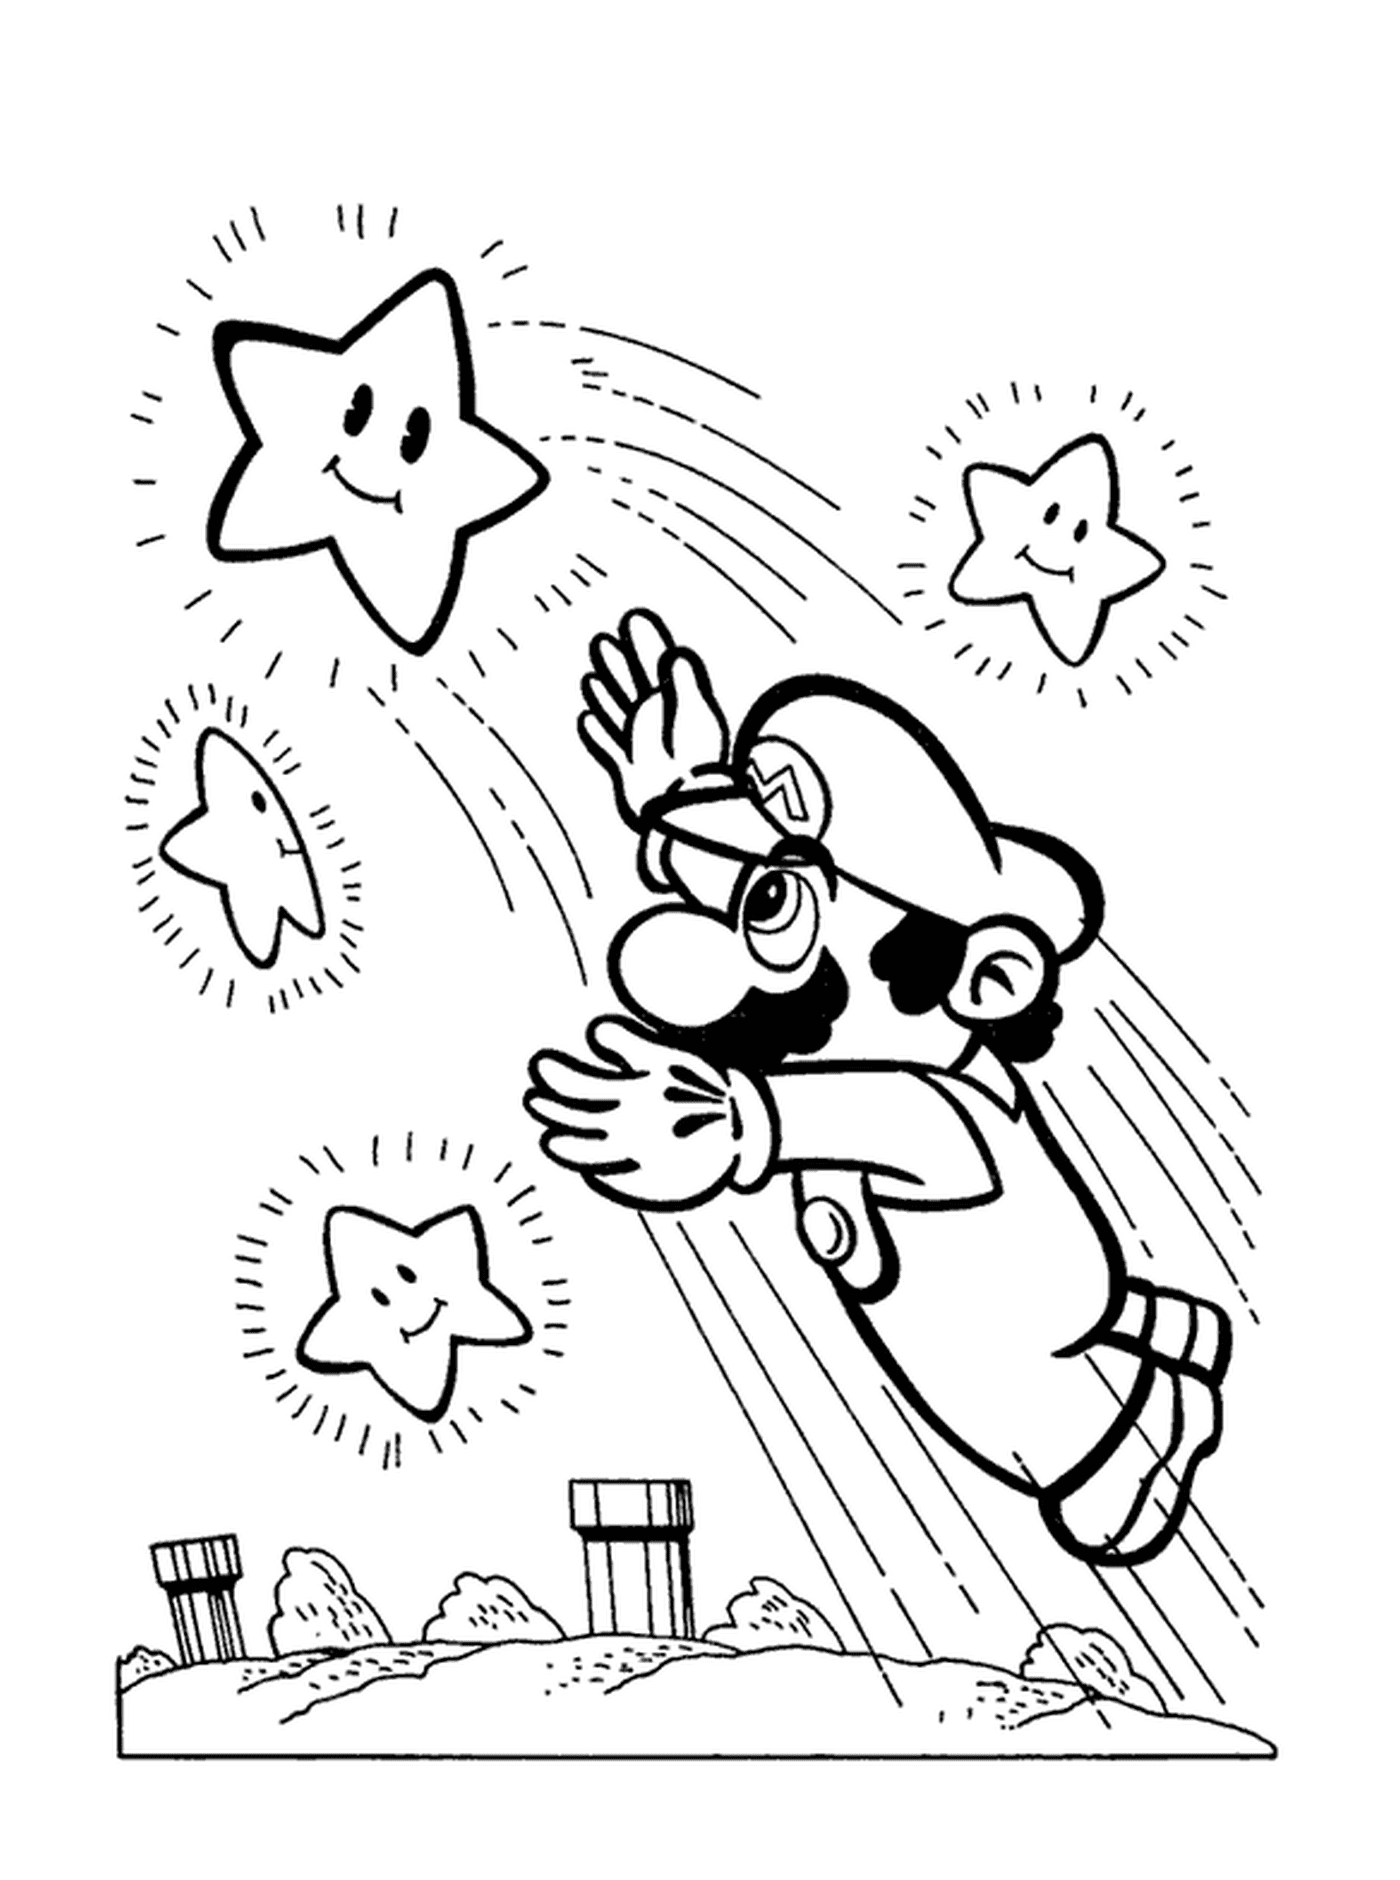  Mario packt einen hellen Stern 